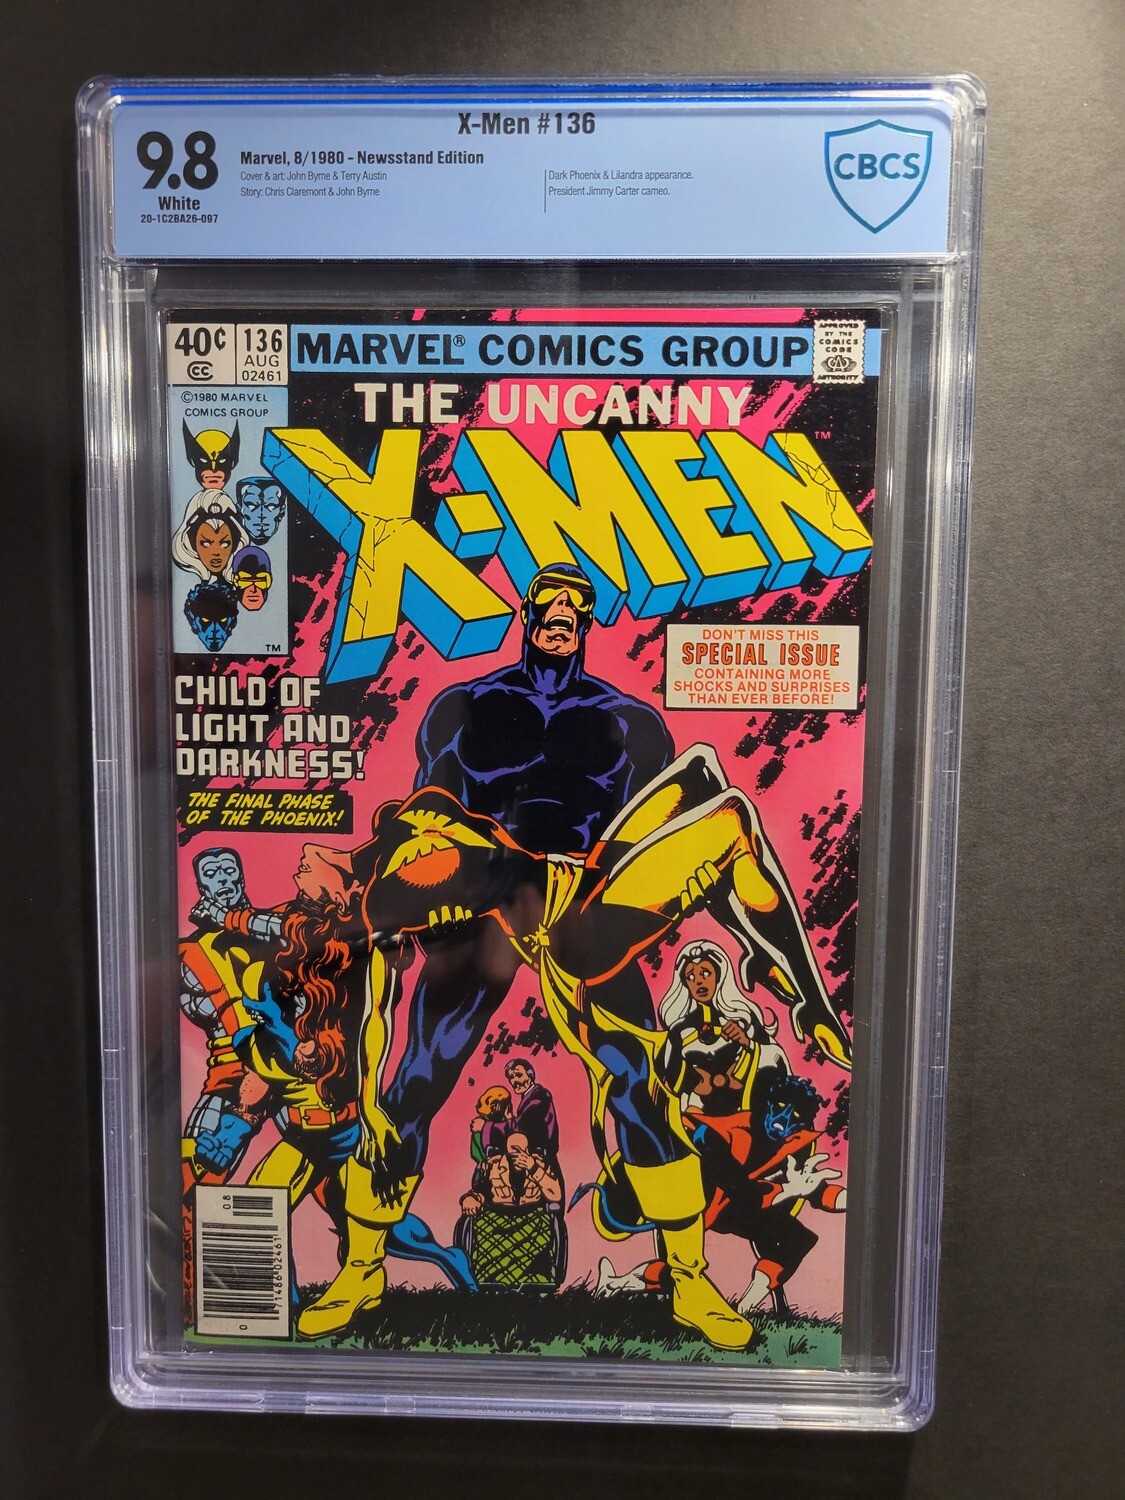 Uncanny X-Men #136 CBCS 9.8 Newsstand